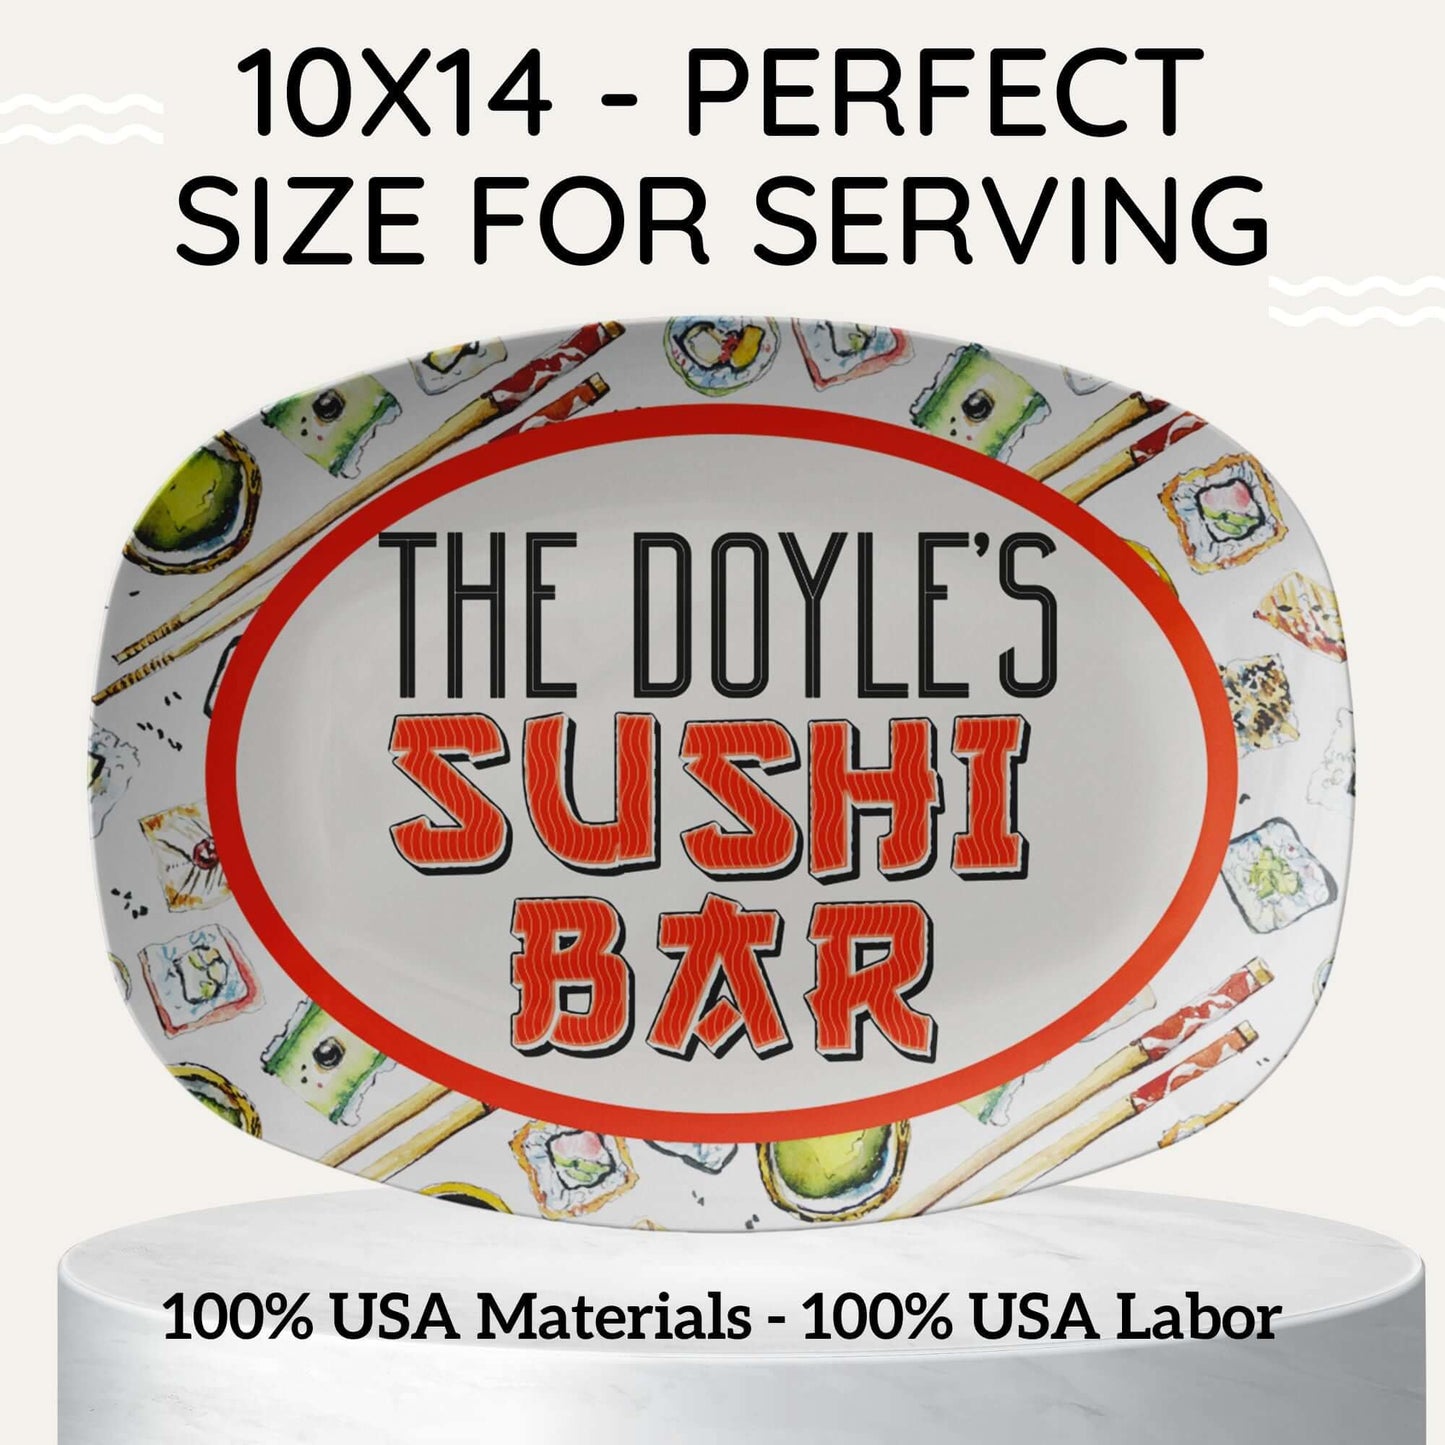 Personalized Sushi Serving Platter, Large Sushi Tray Customized